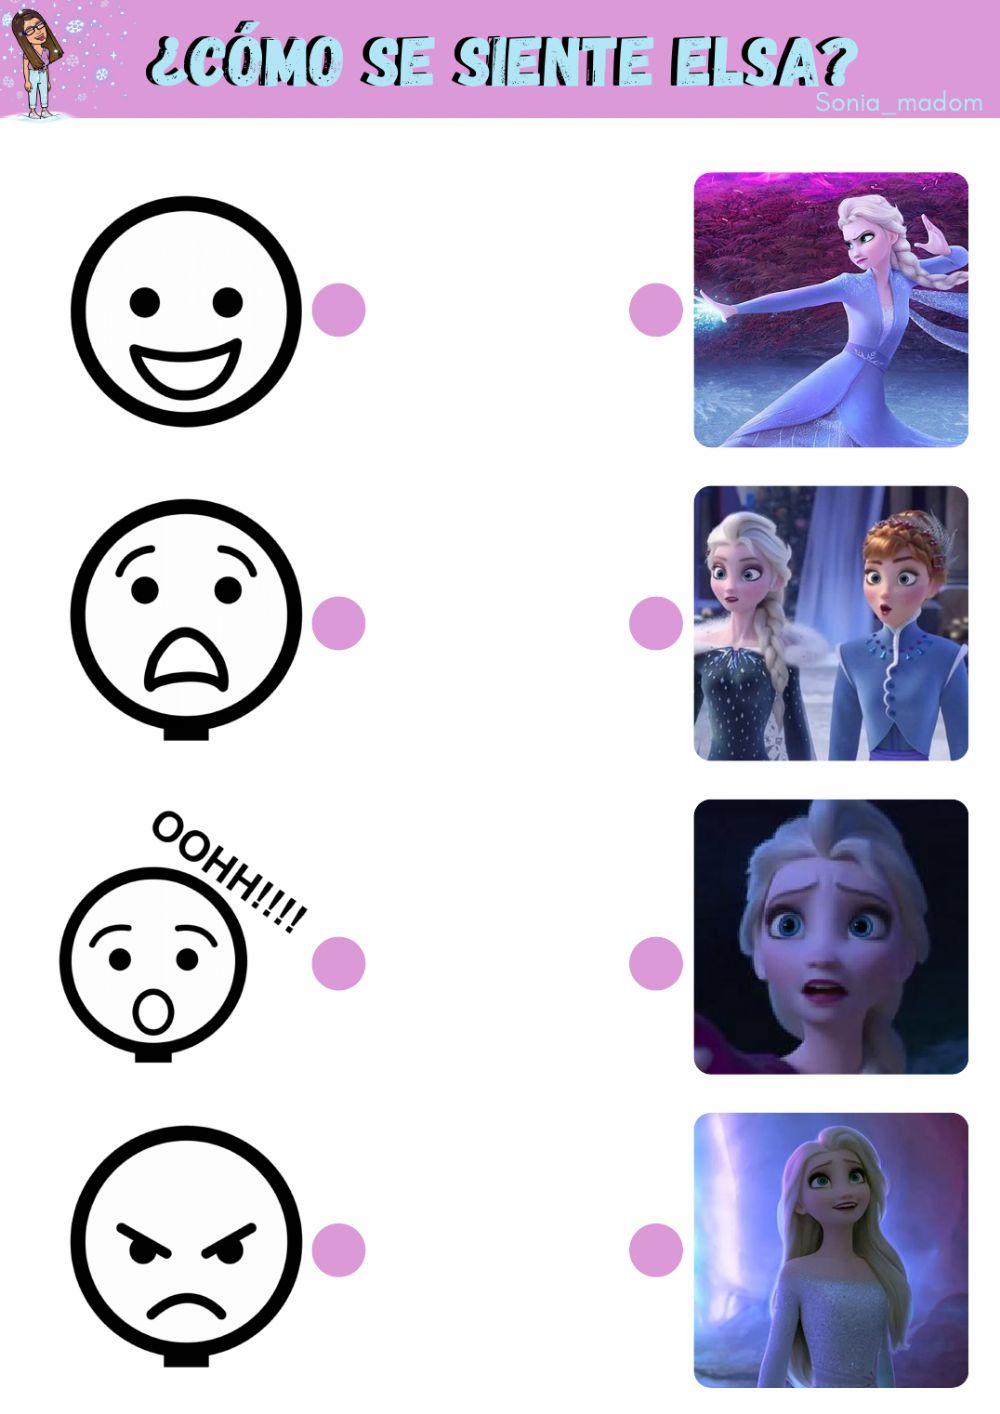 Las emociones de Elsa